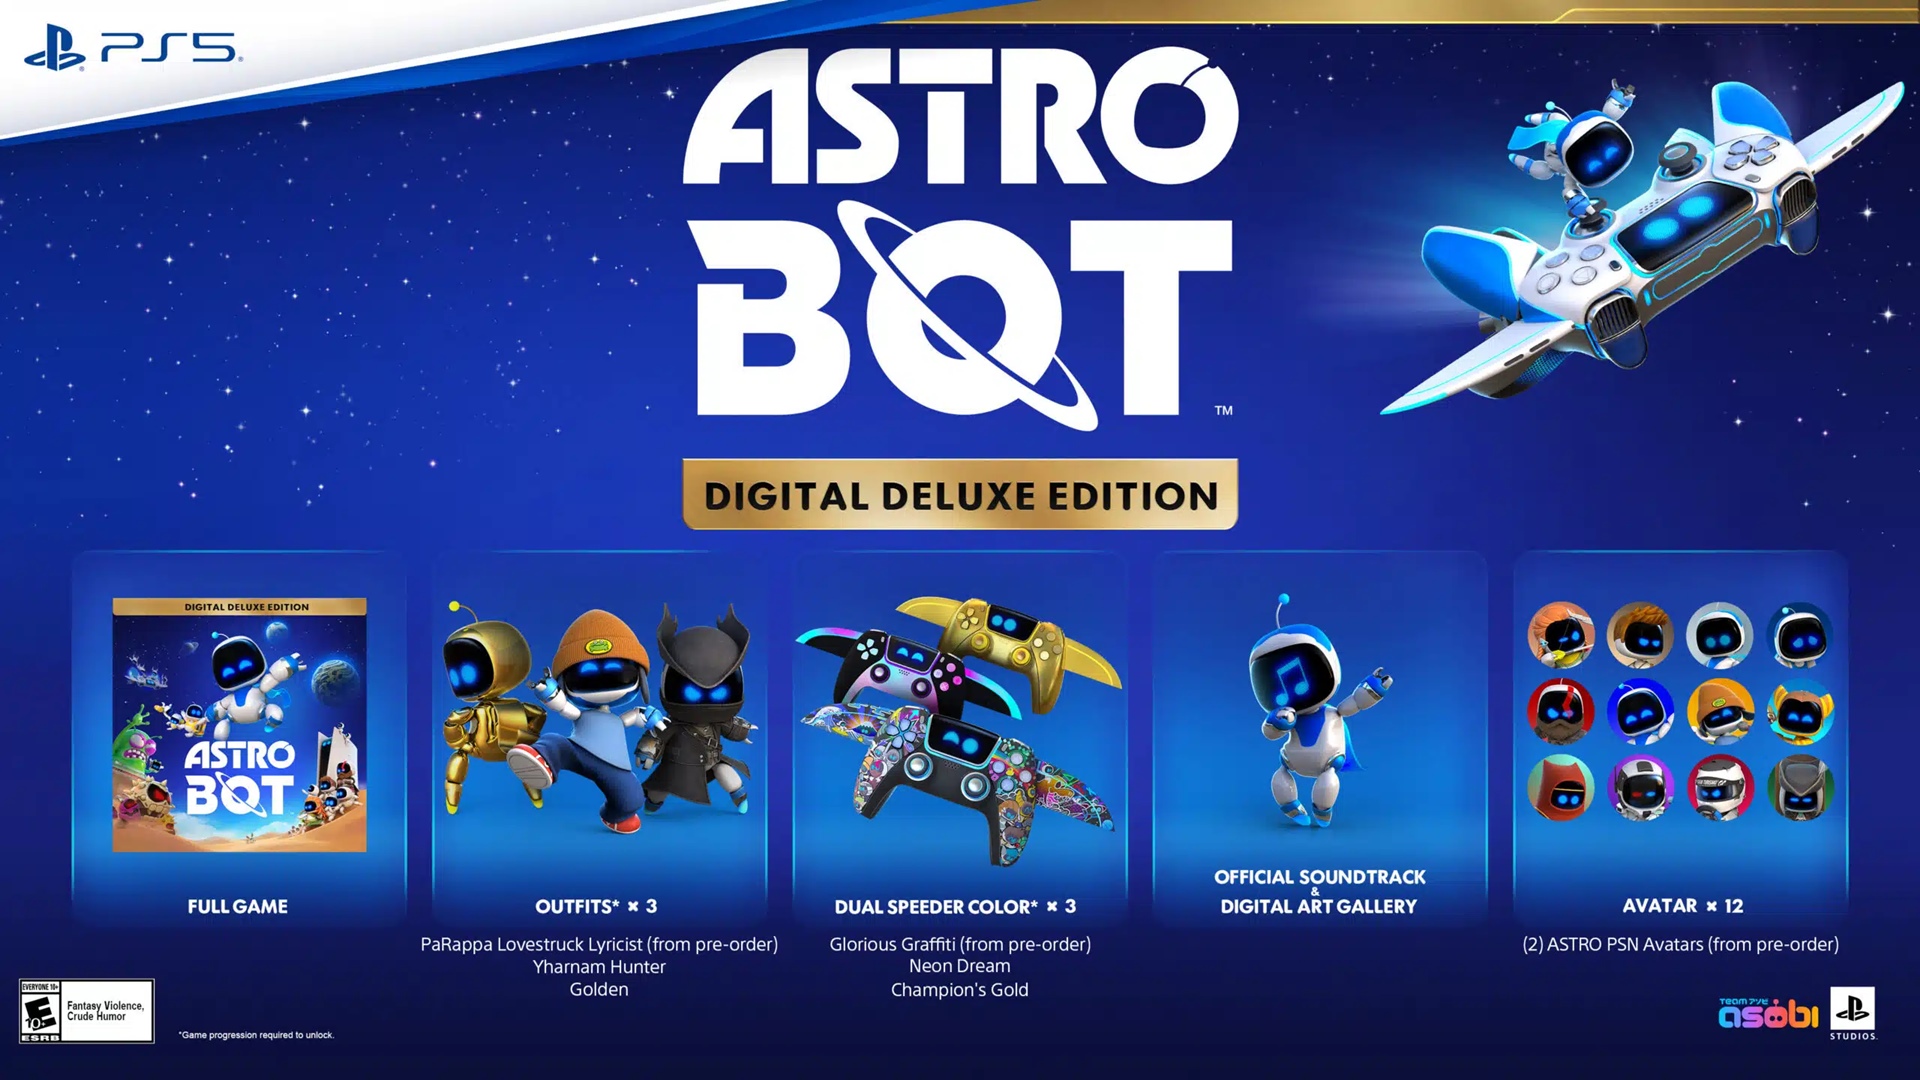 Bônus da versão Digital Deluxe Edition do novo Astro Bot de PS5.